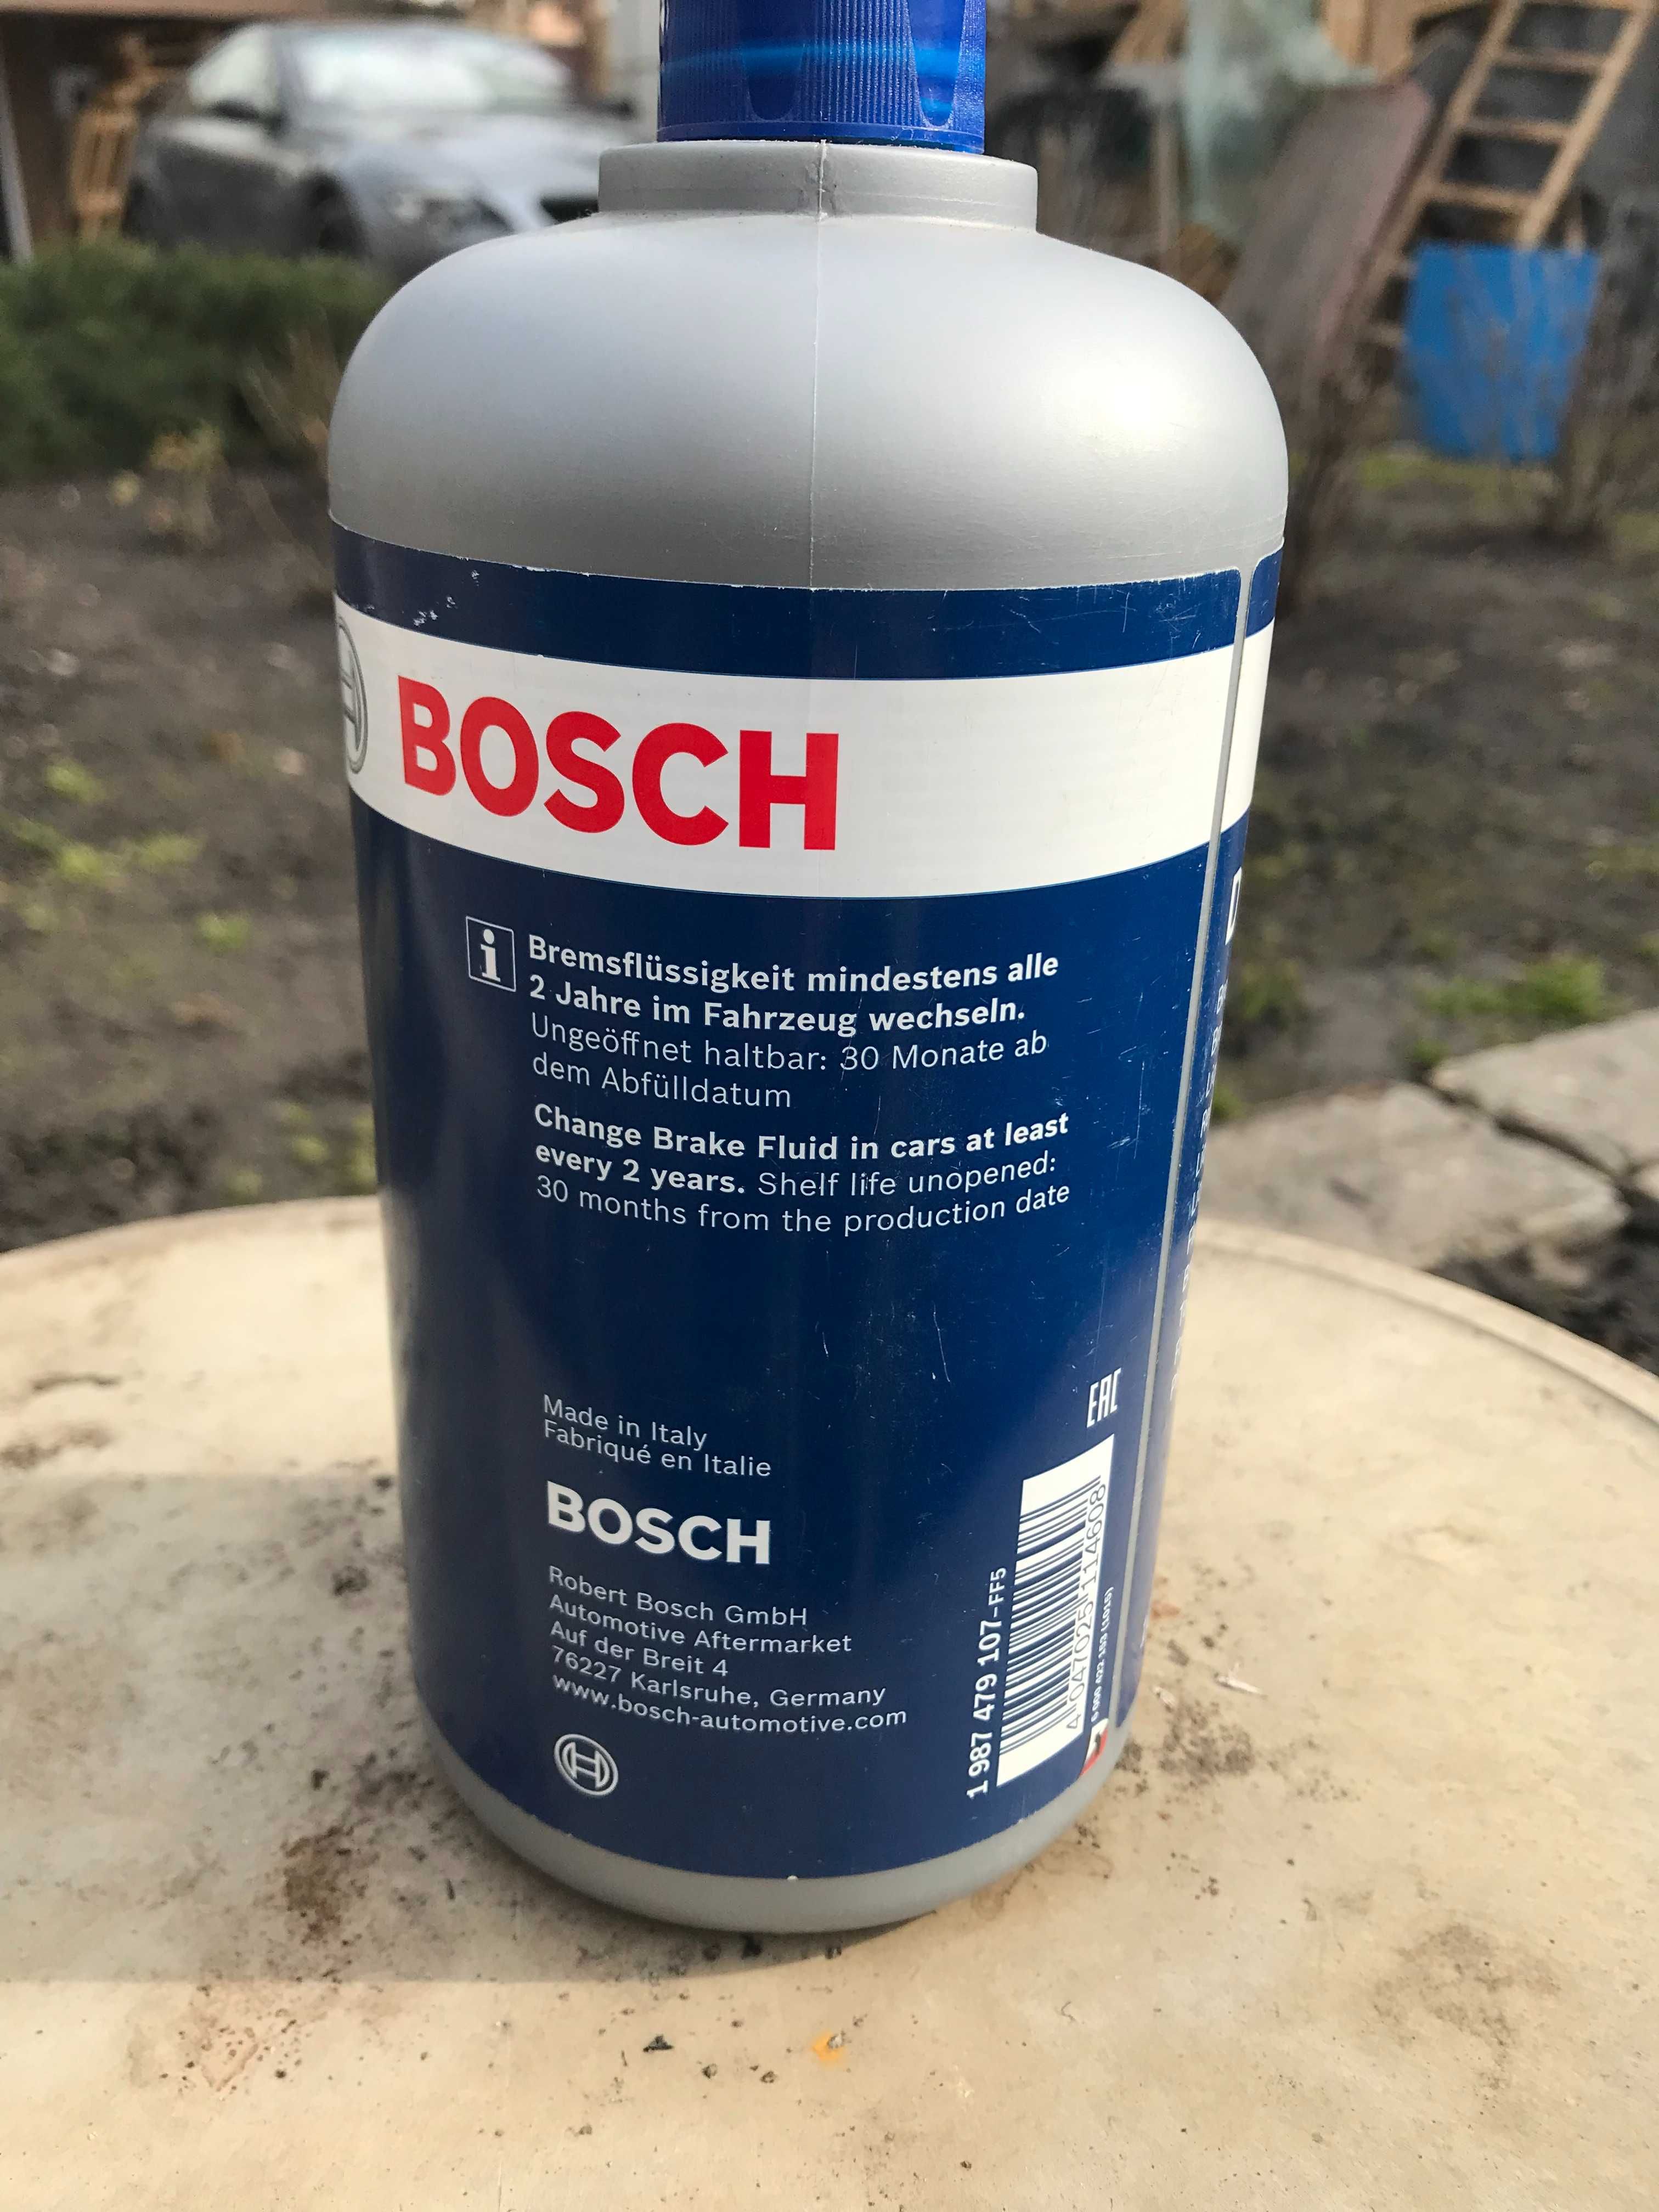 Тормозная жидкость Bosch